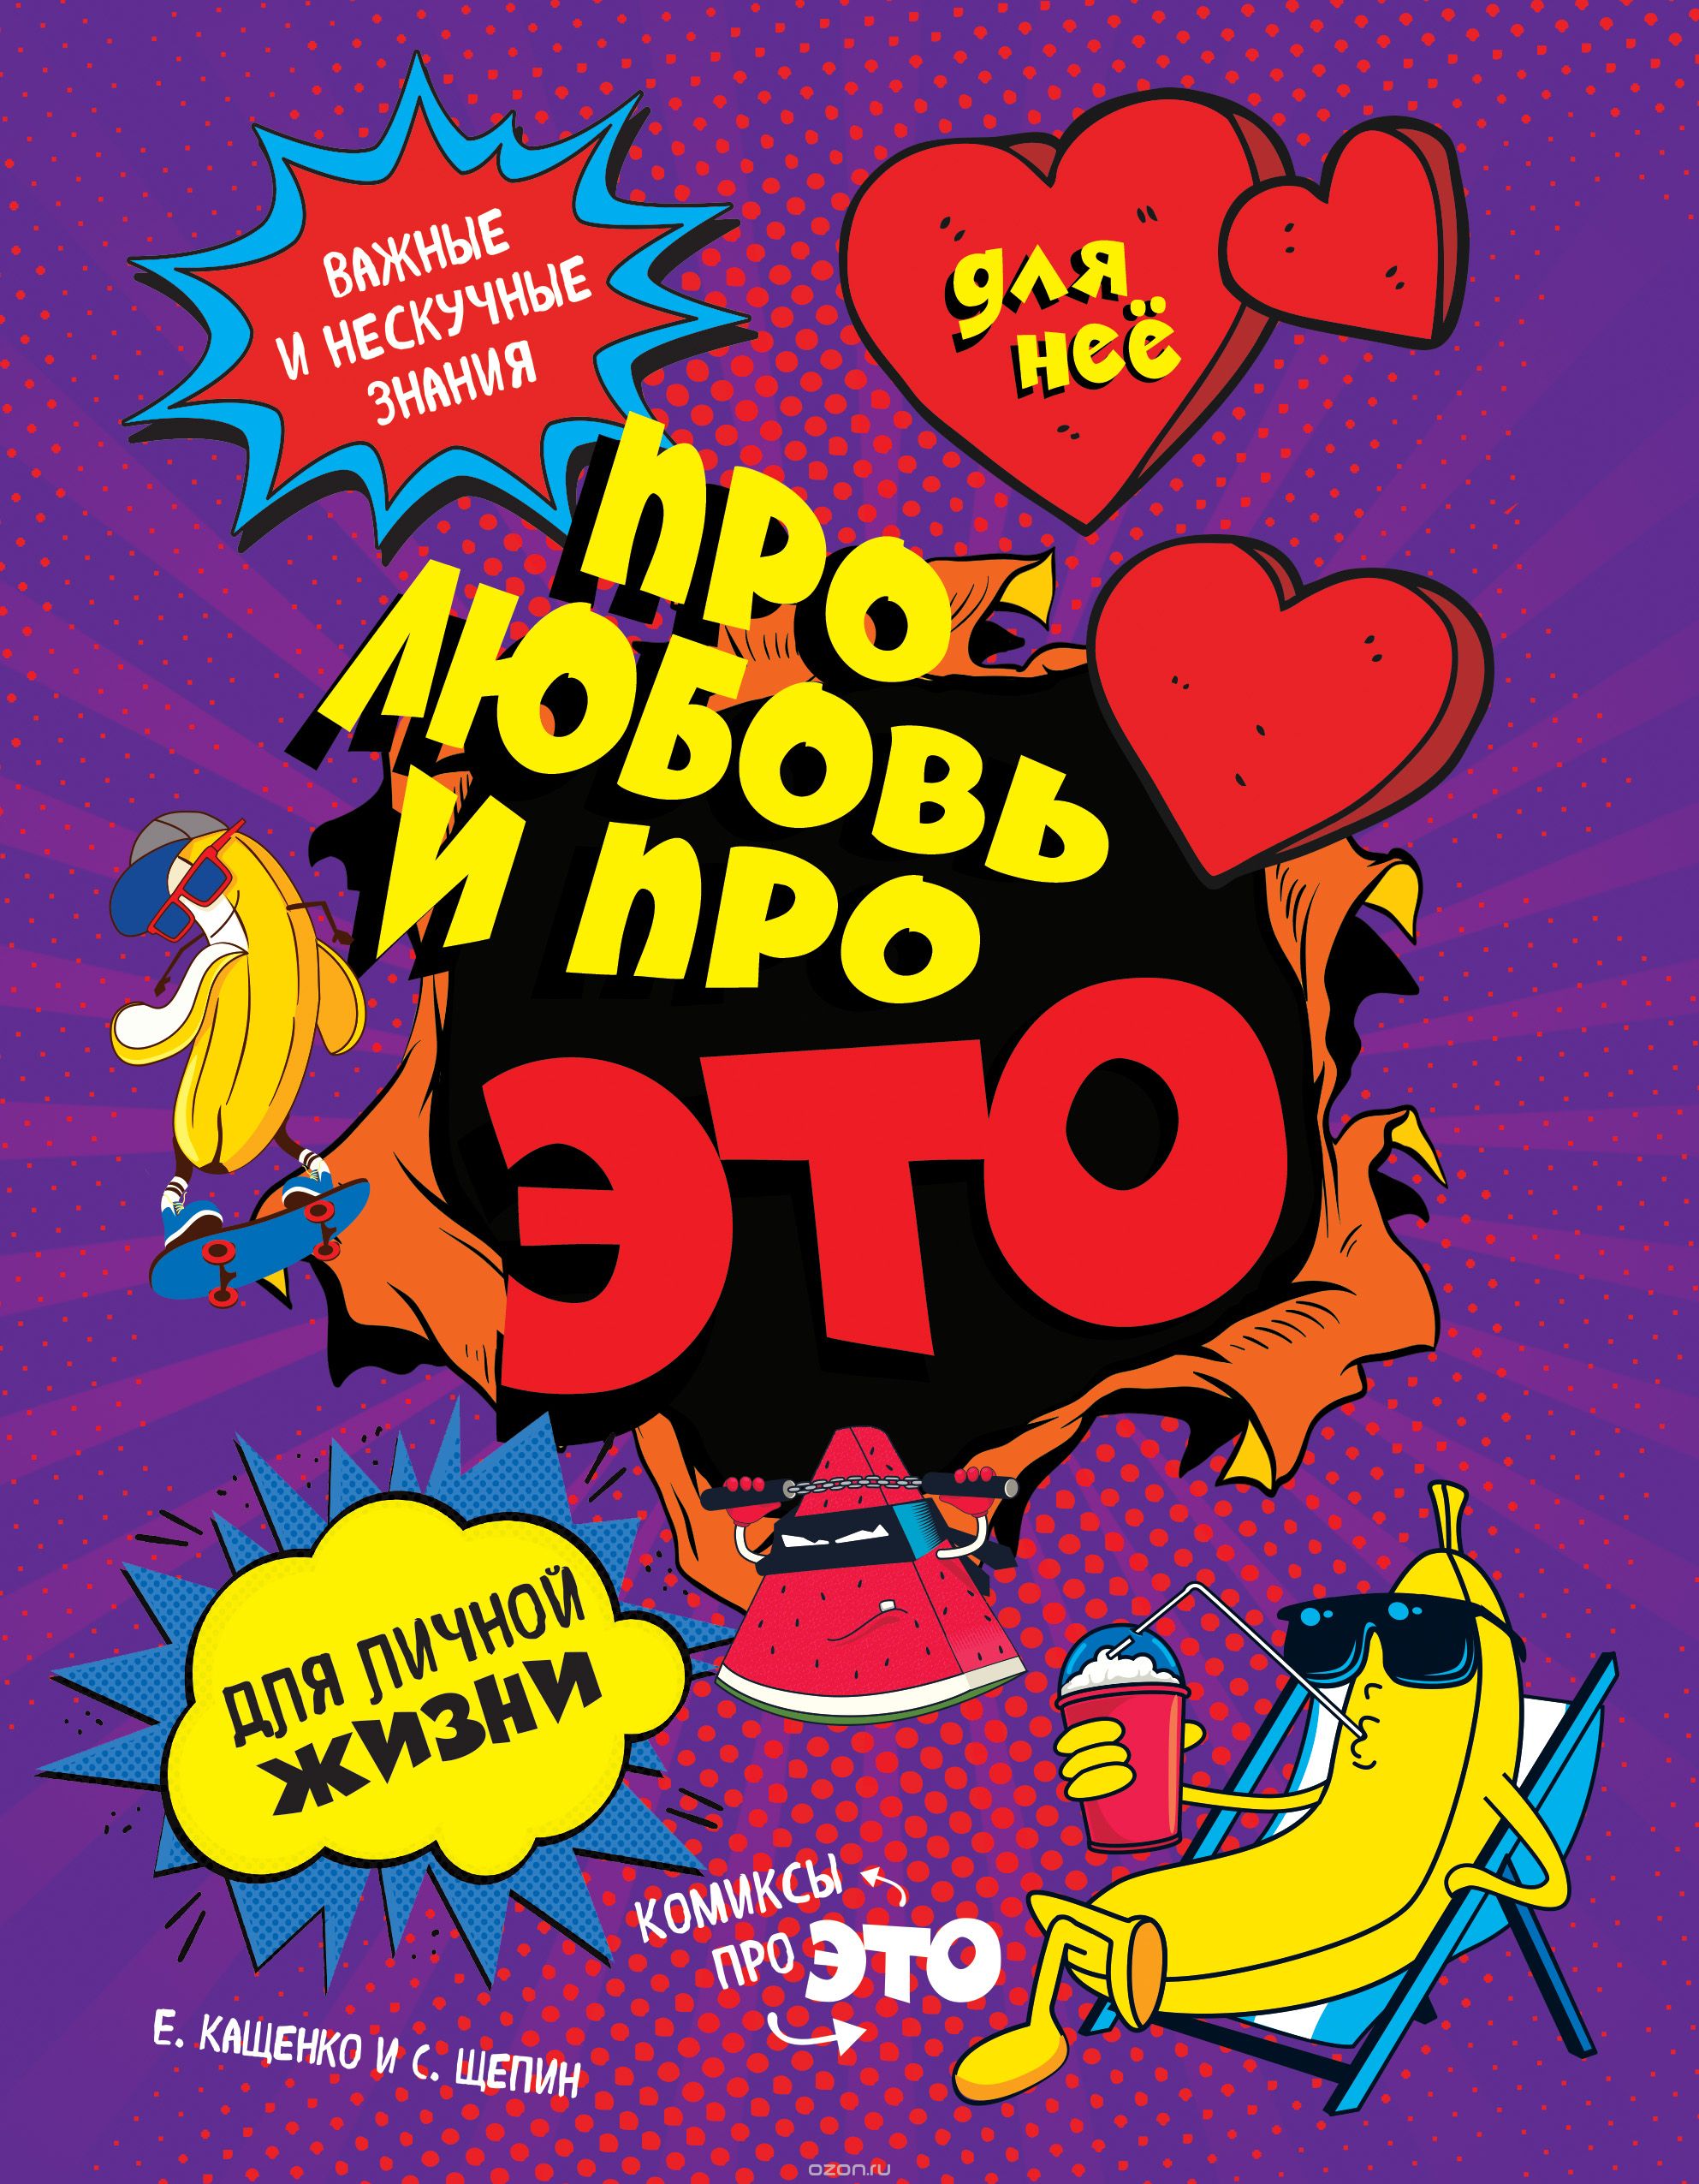 Комикс на русском языке «Для нее. Про любовь и про ЭТО: важные и нескучные знания для личной жизни»